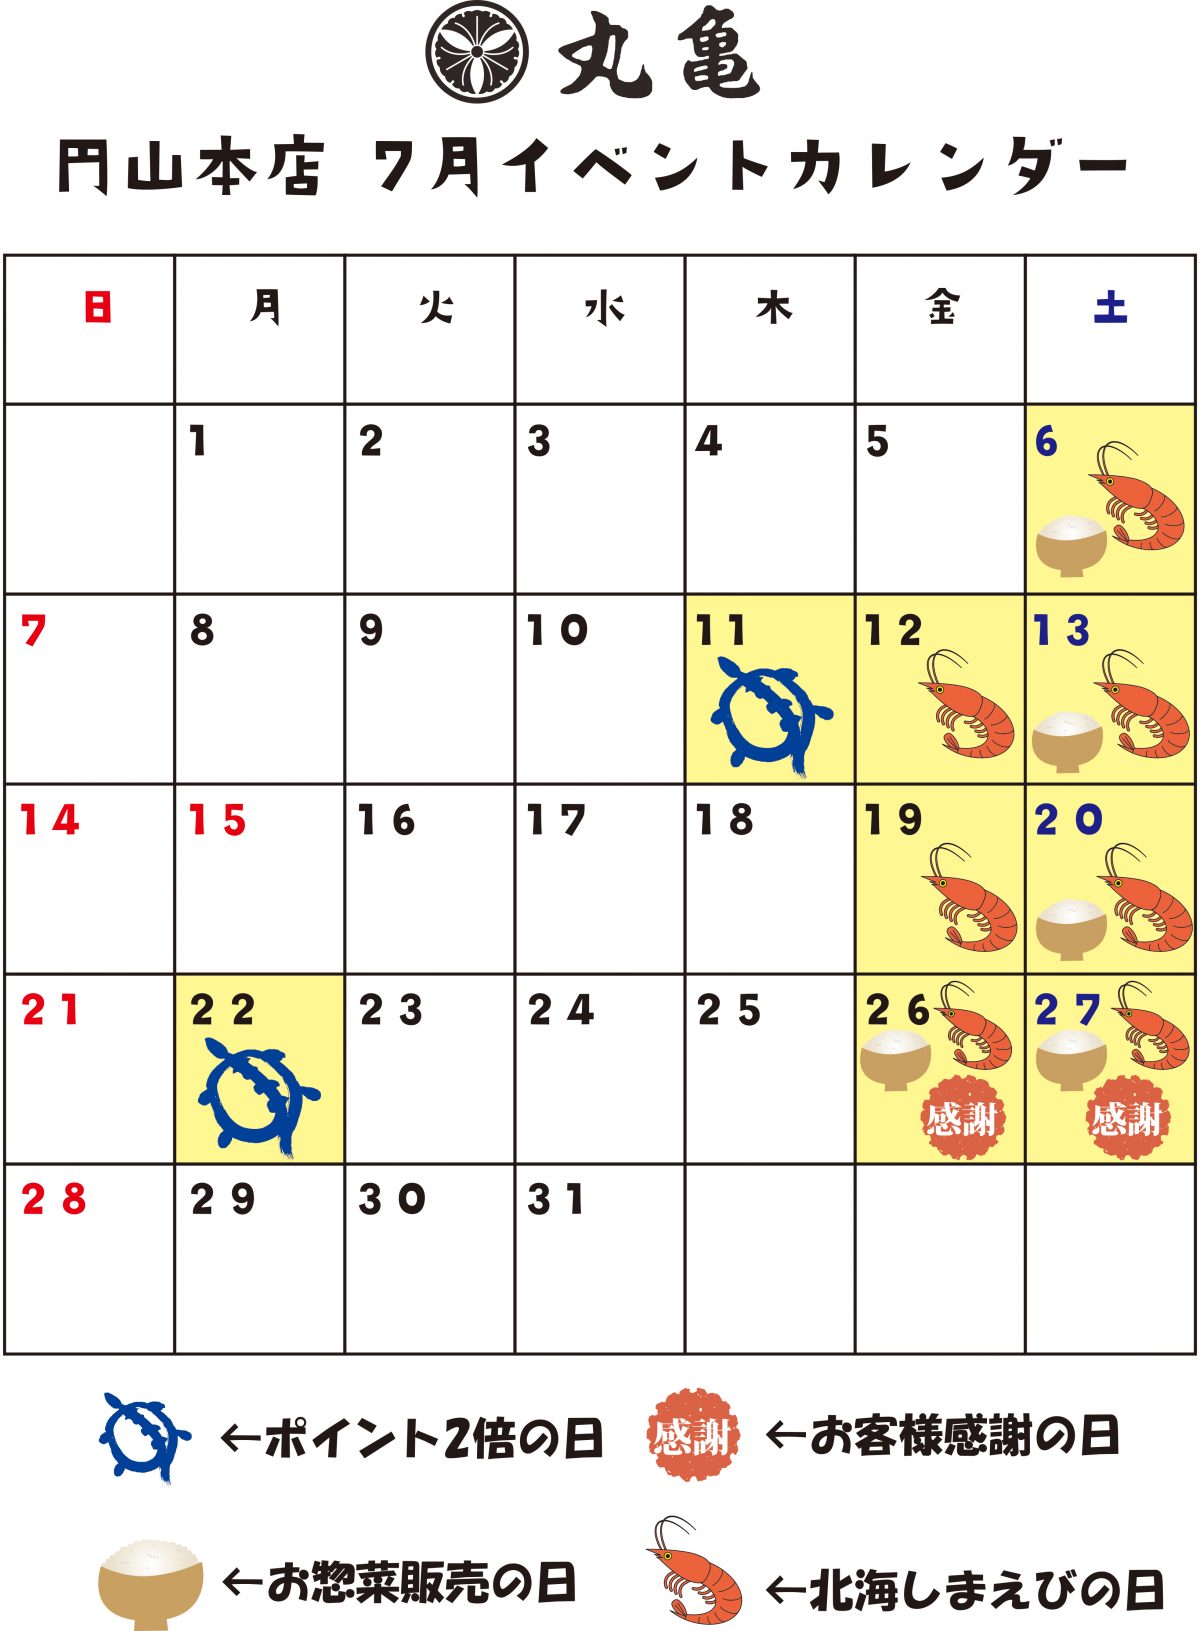 【円山本店】7月のイベントカレンダー